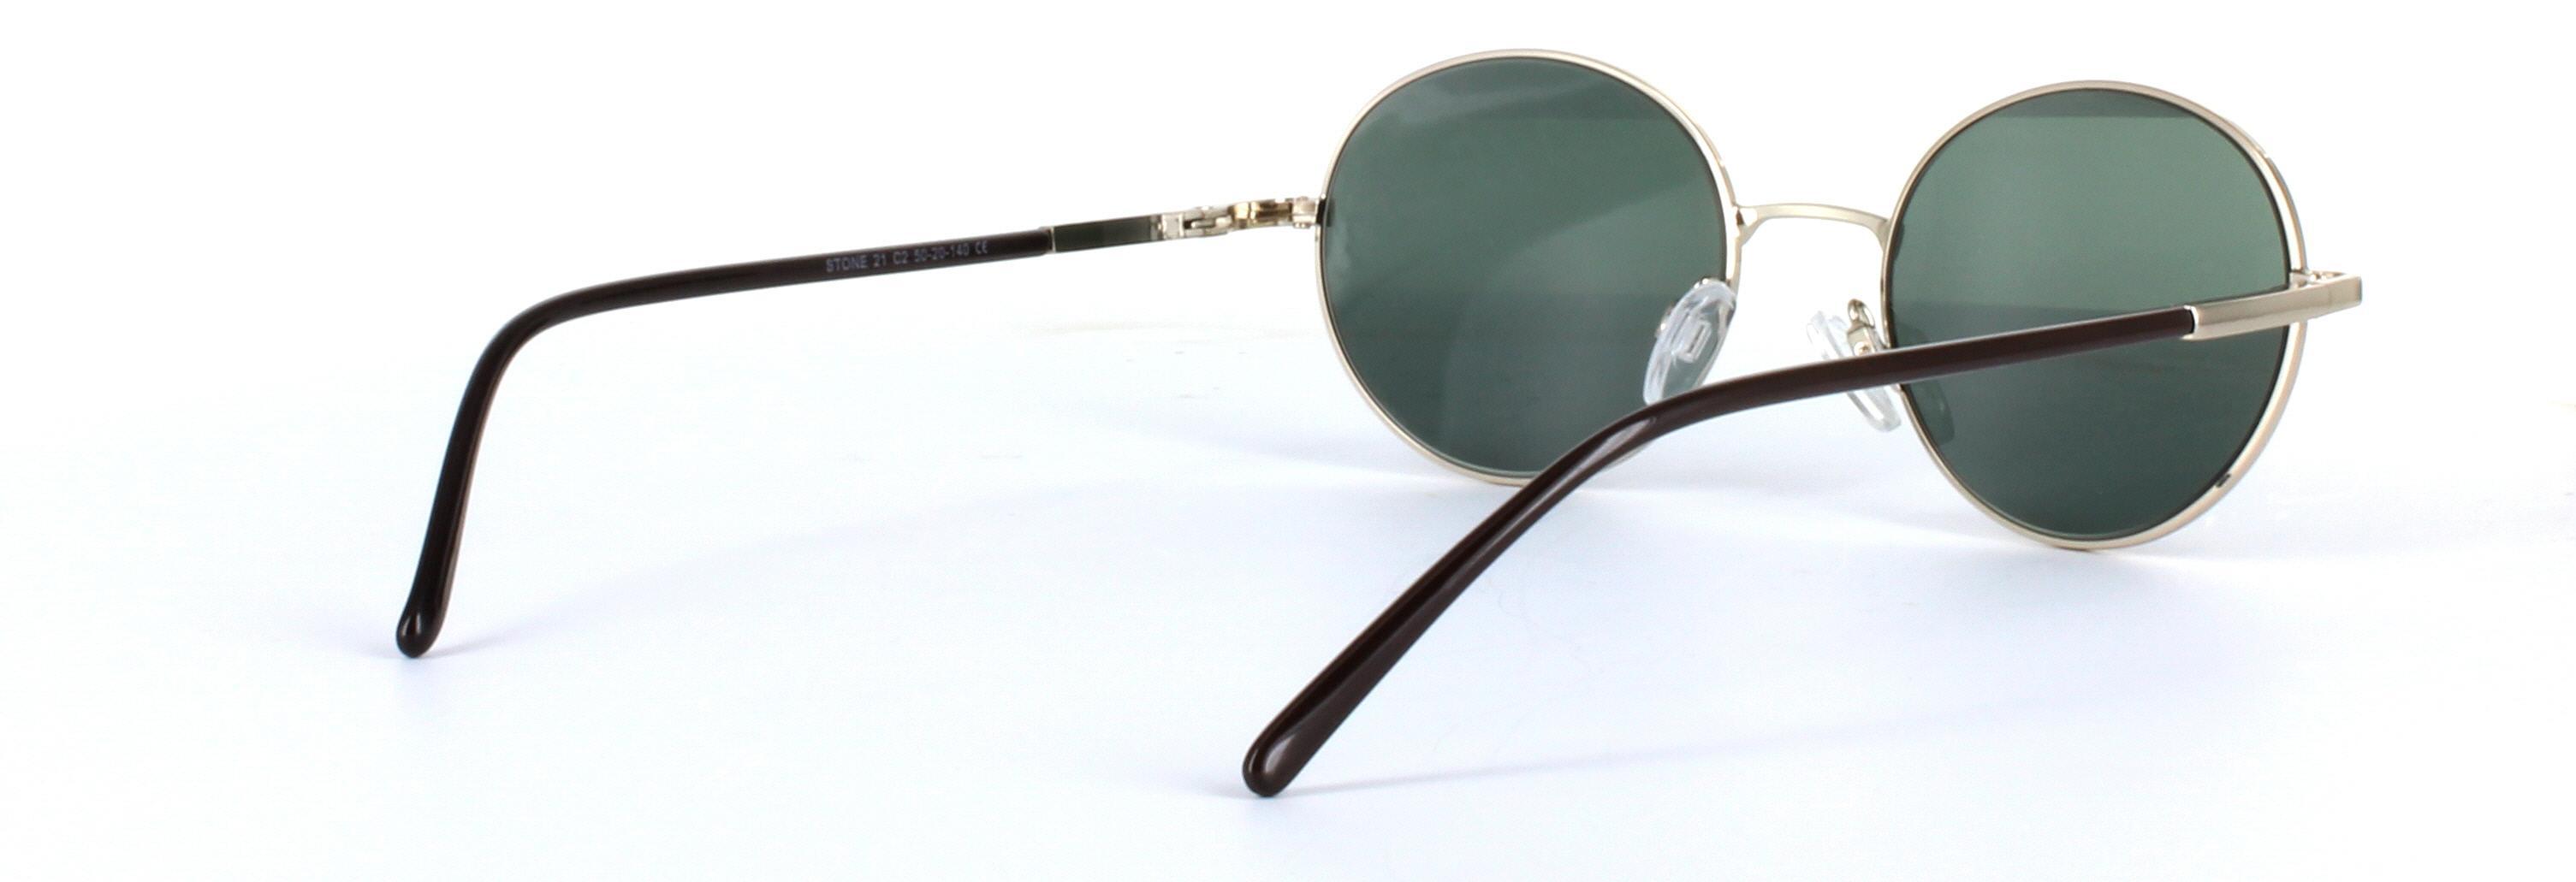 Discus Gold Full Rim Round Metal Sunglasses - Image View 4